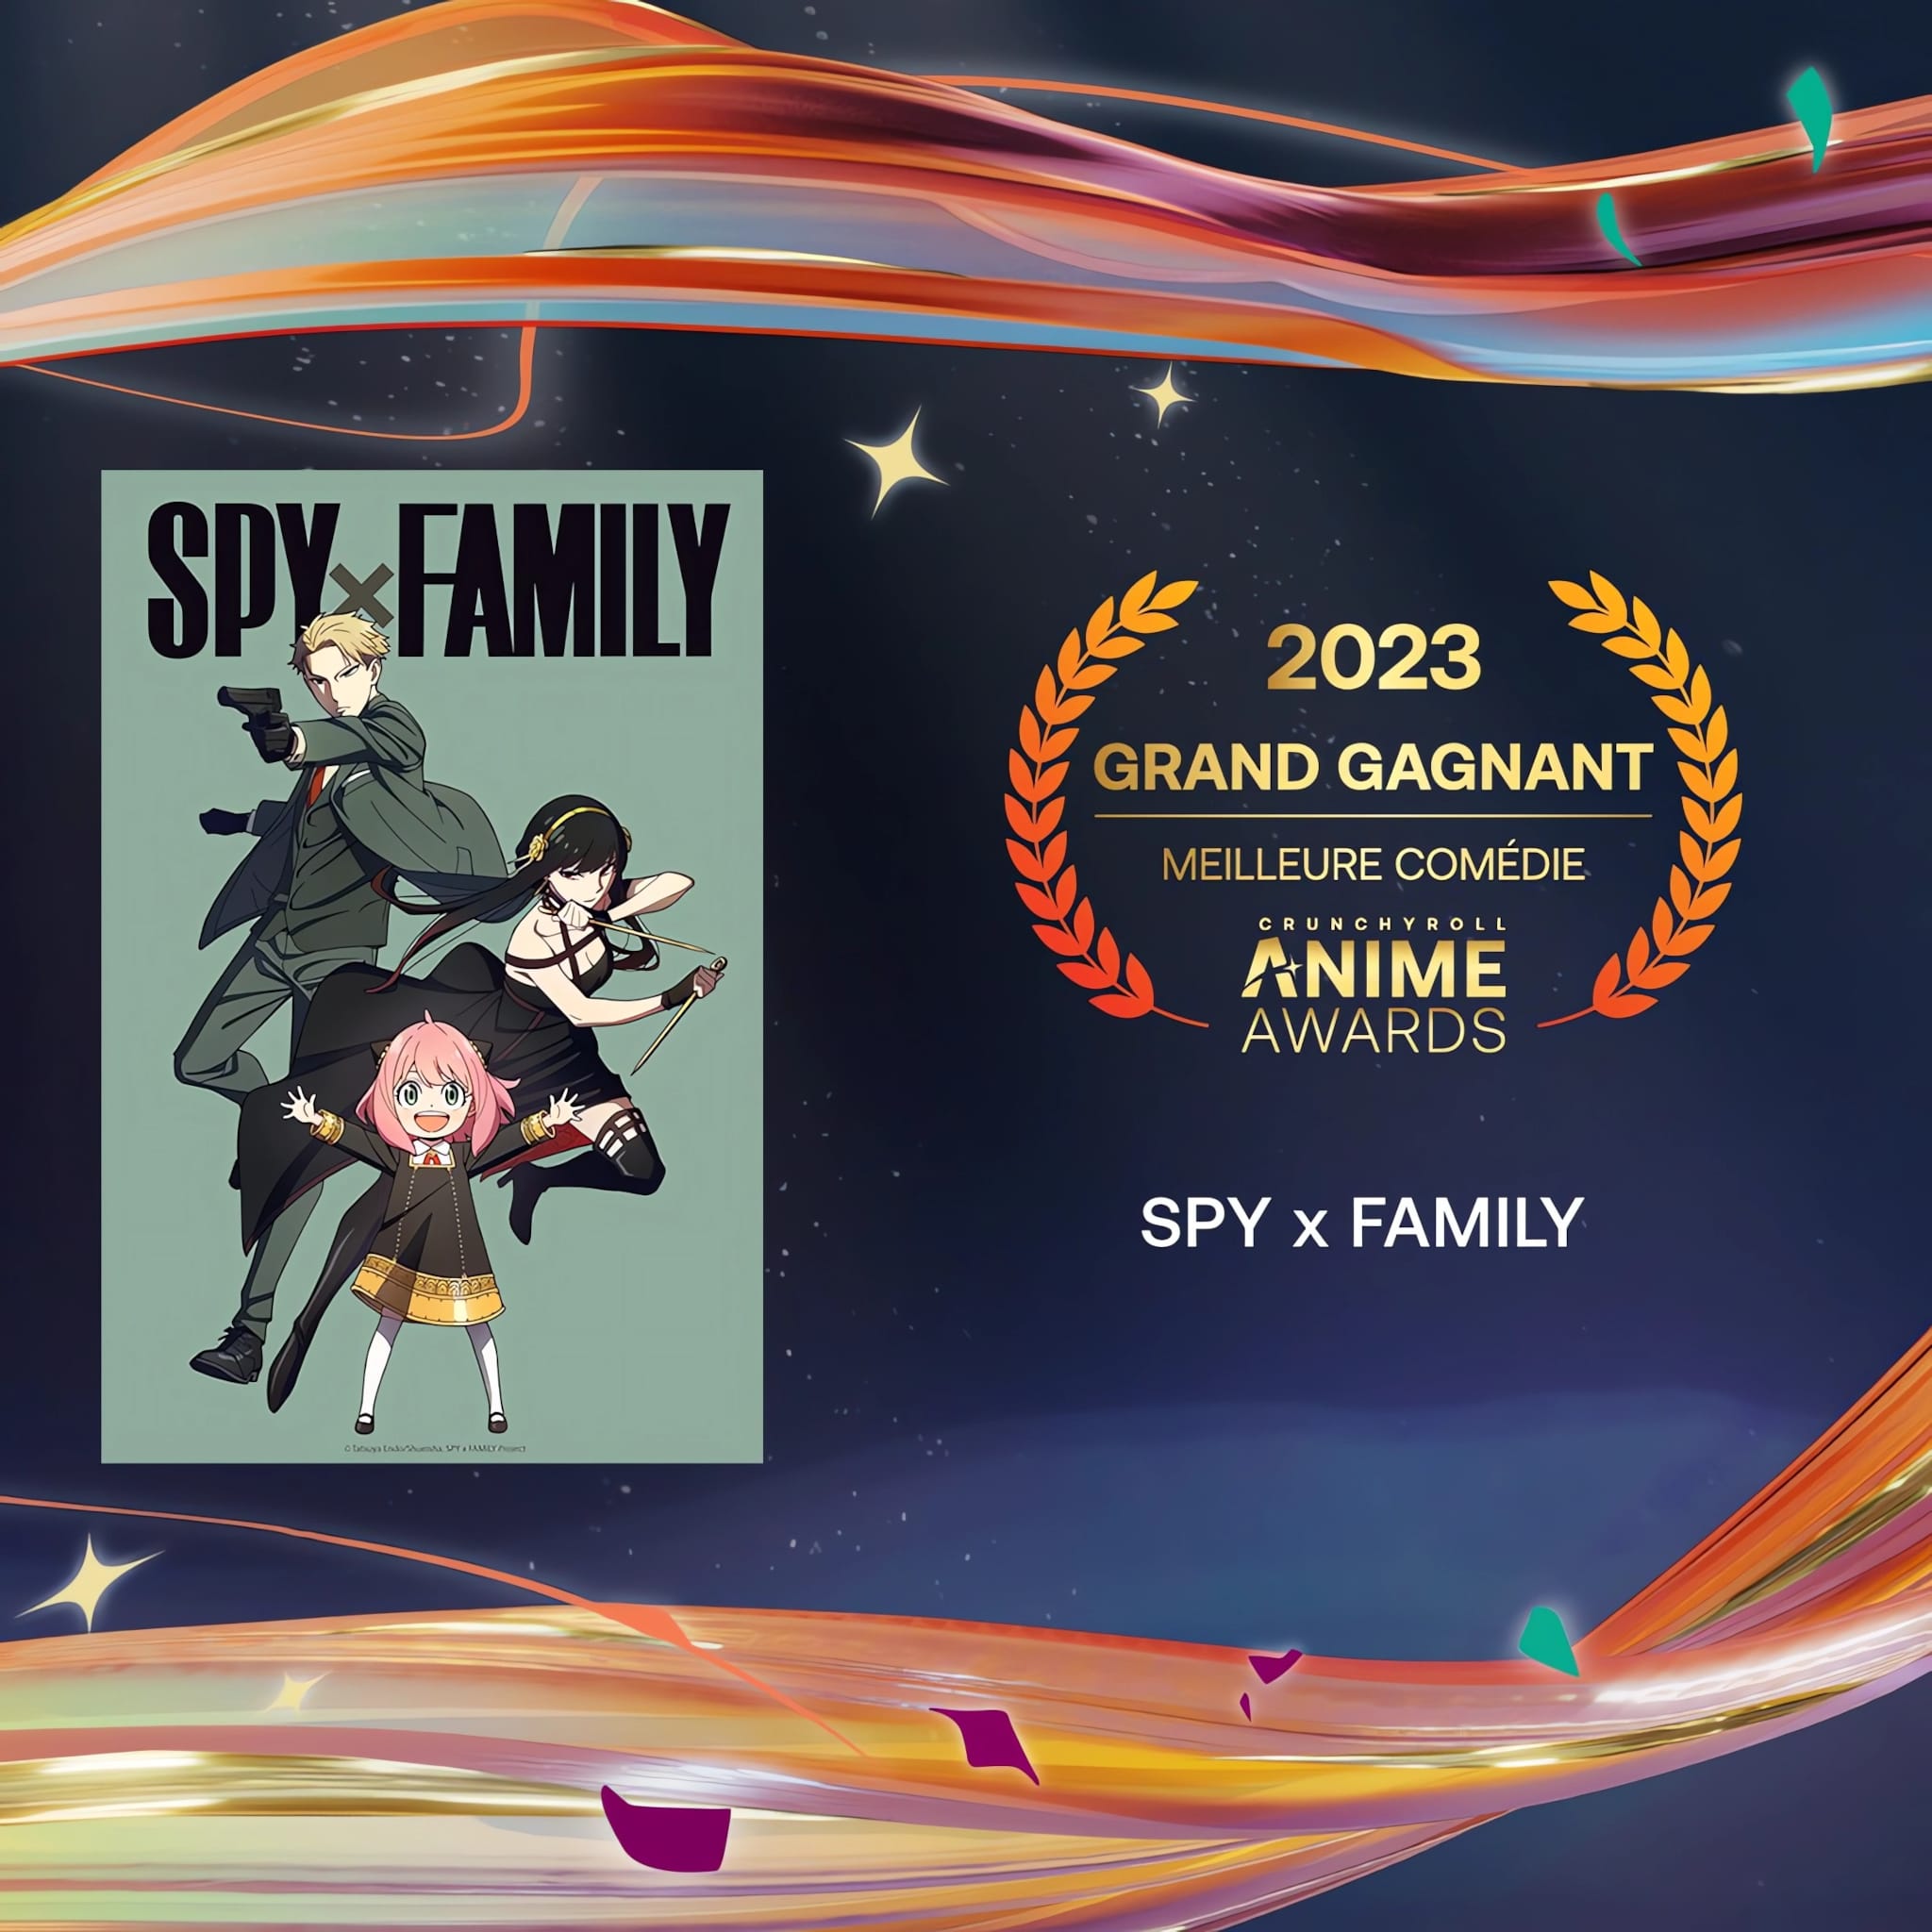 Prix de la meilleure comédie pour les Crunchyroll Anime Awards 2023